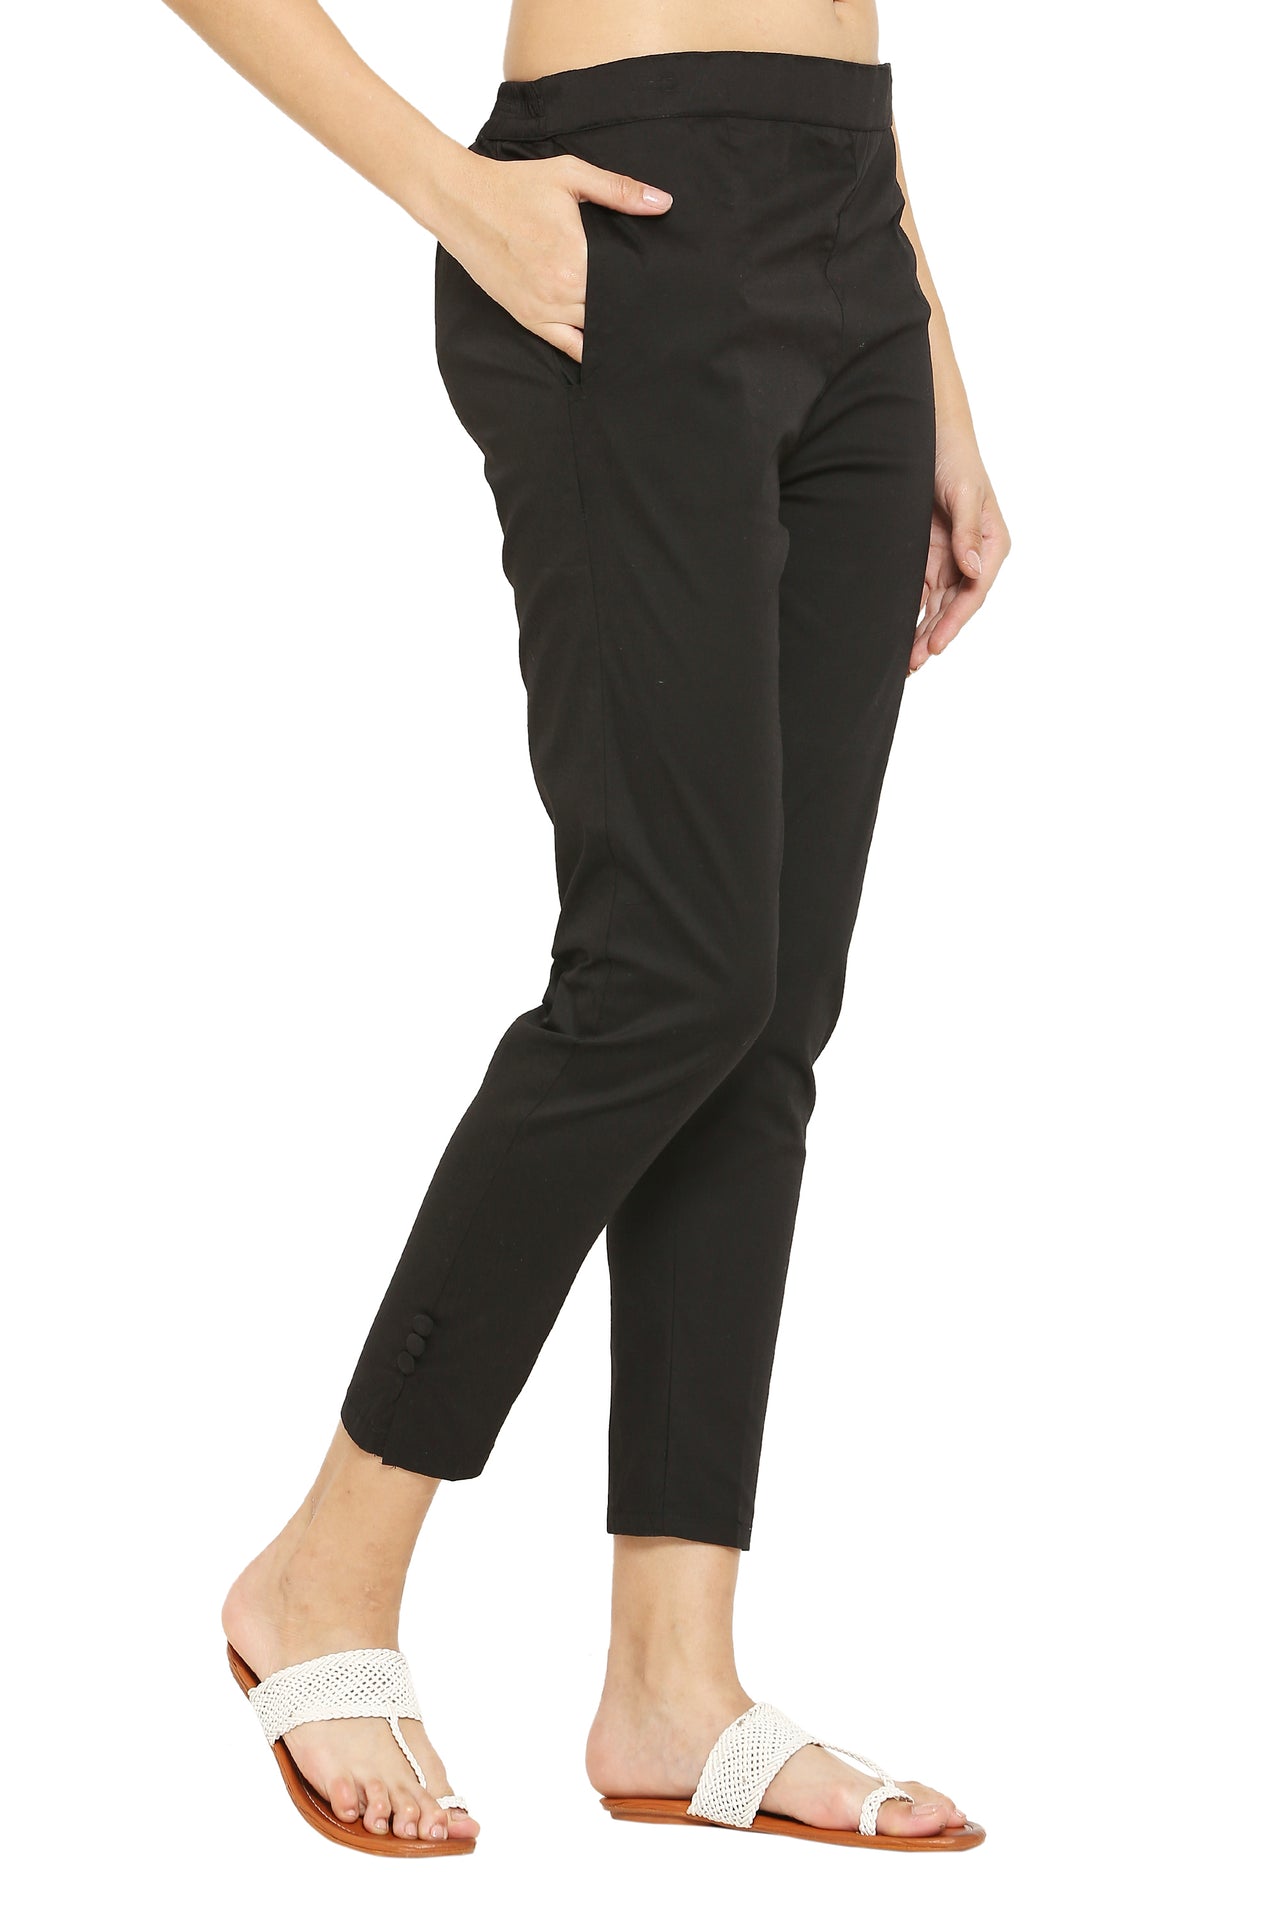 PAVONINE Black Color Stretchable Cotton Lycra Fabric Pencil Pant For Women - Distacart